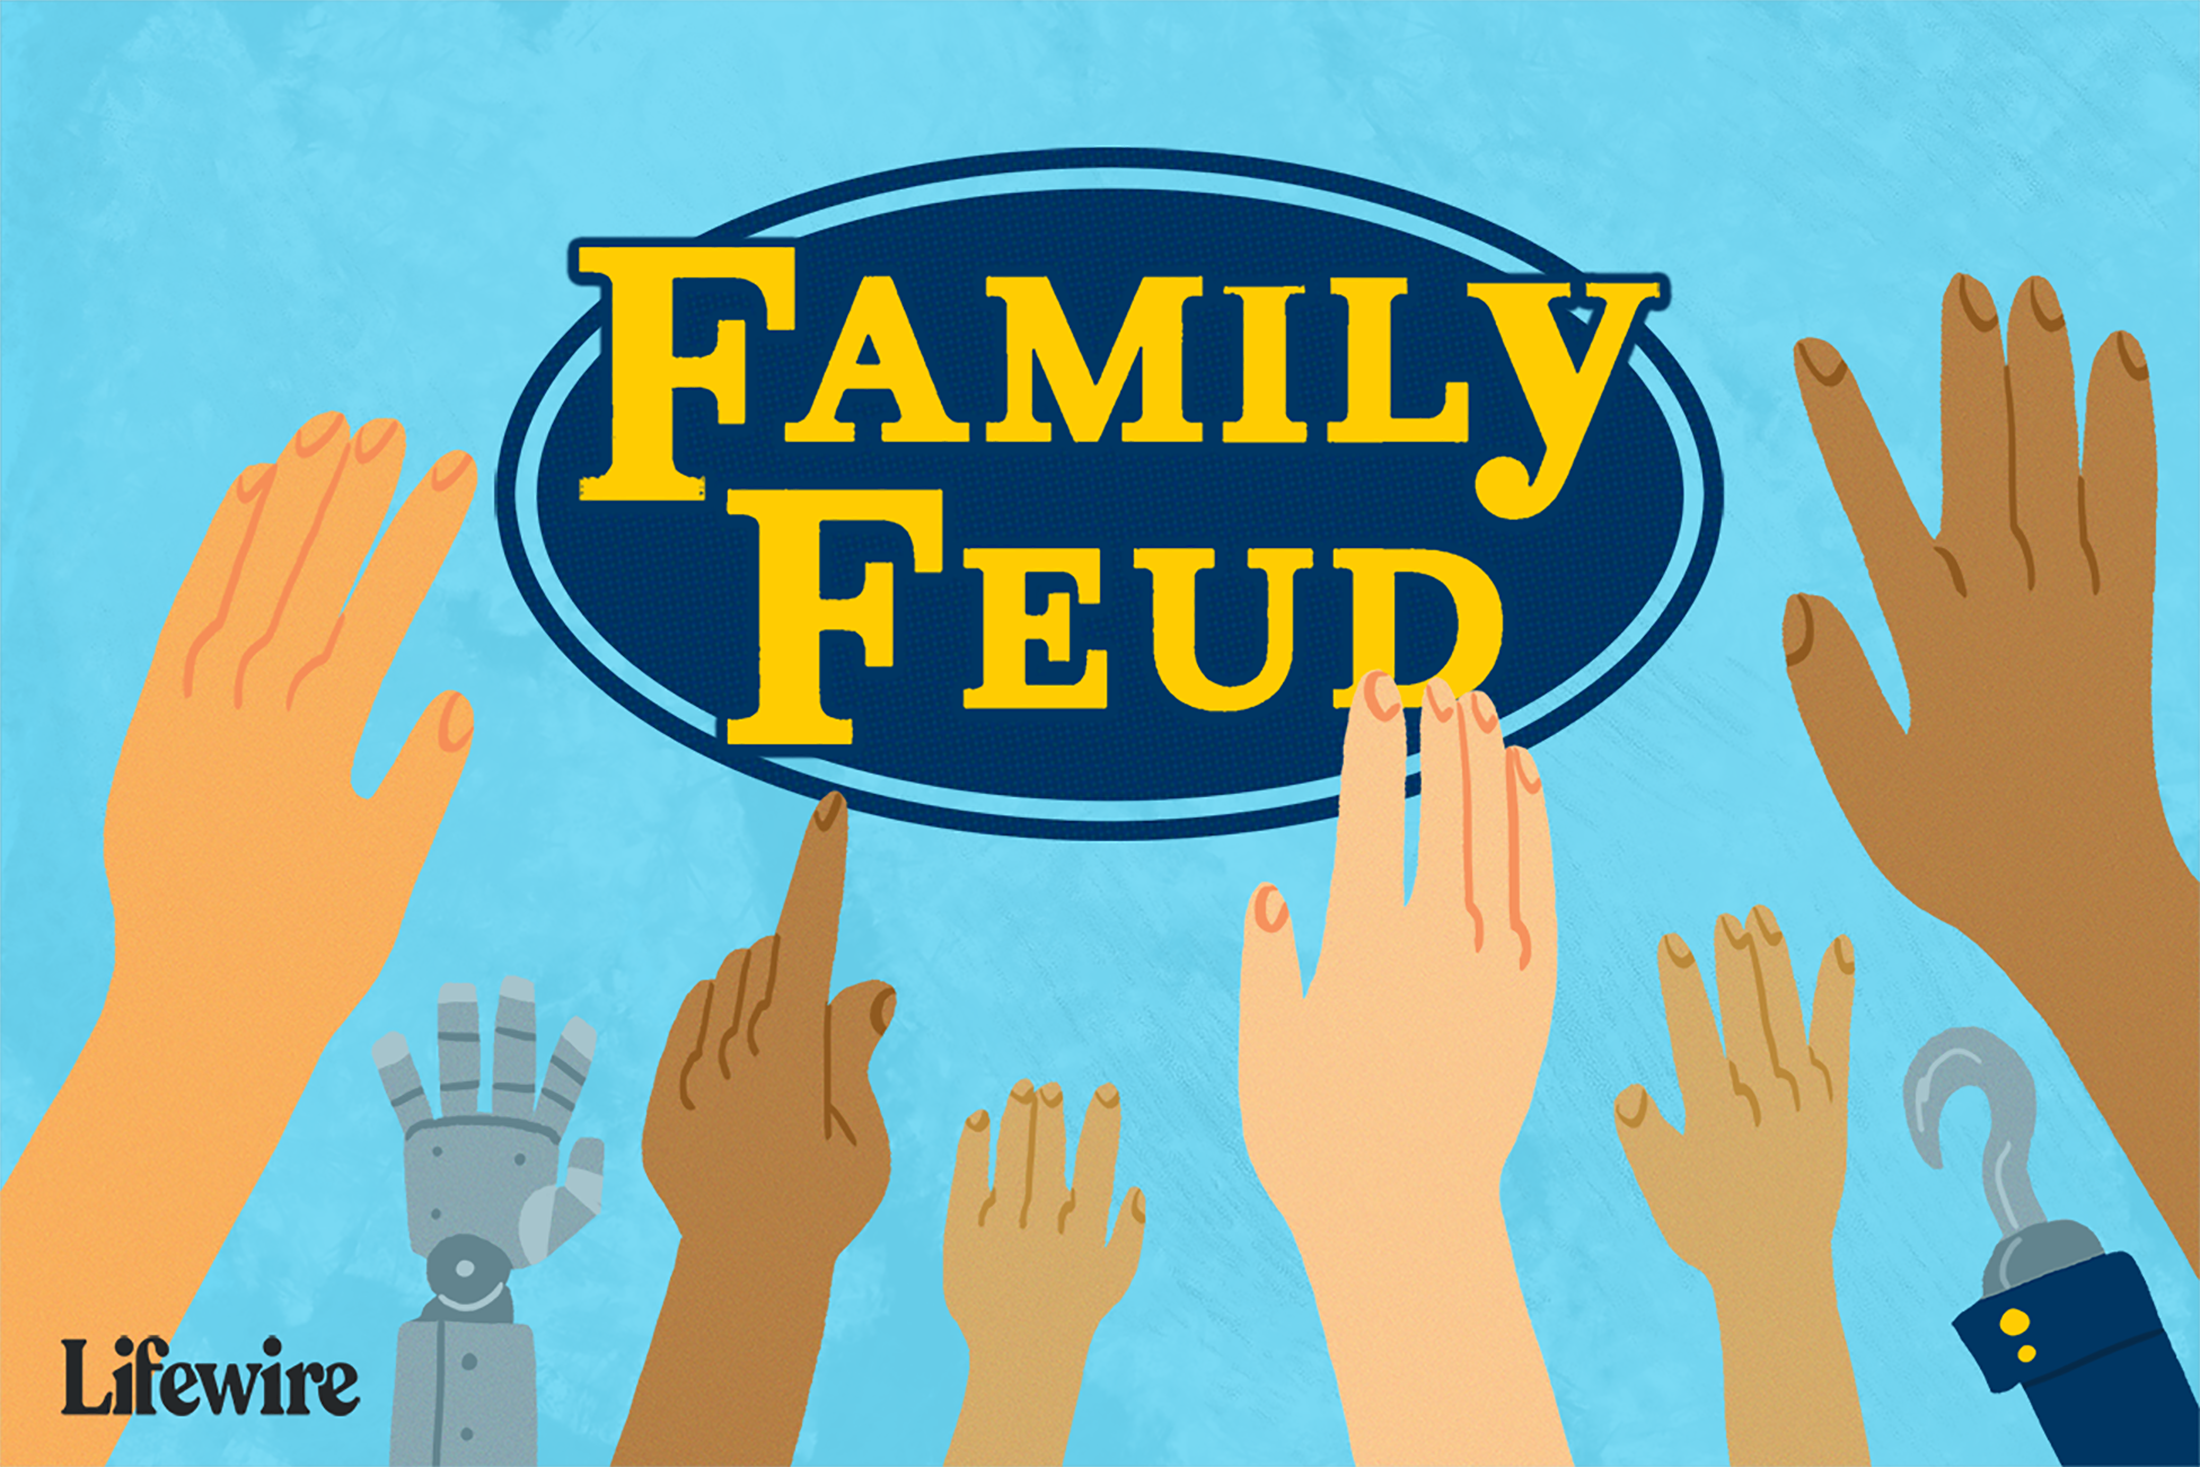 Ilustração de um logotipo do Family Feud com várias mãos sendo levantadas em primeiro plano